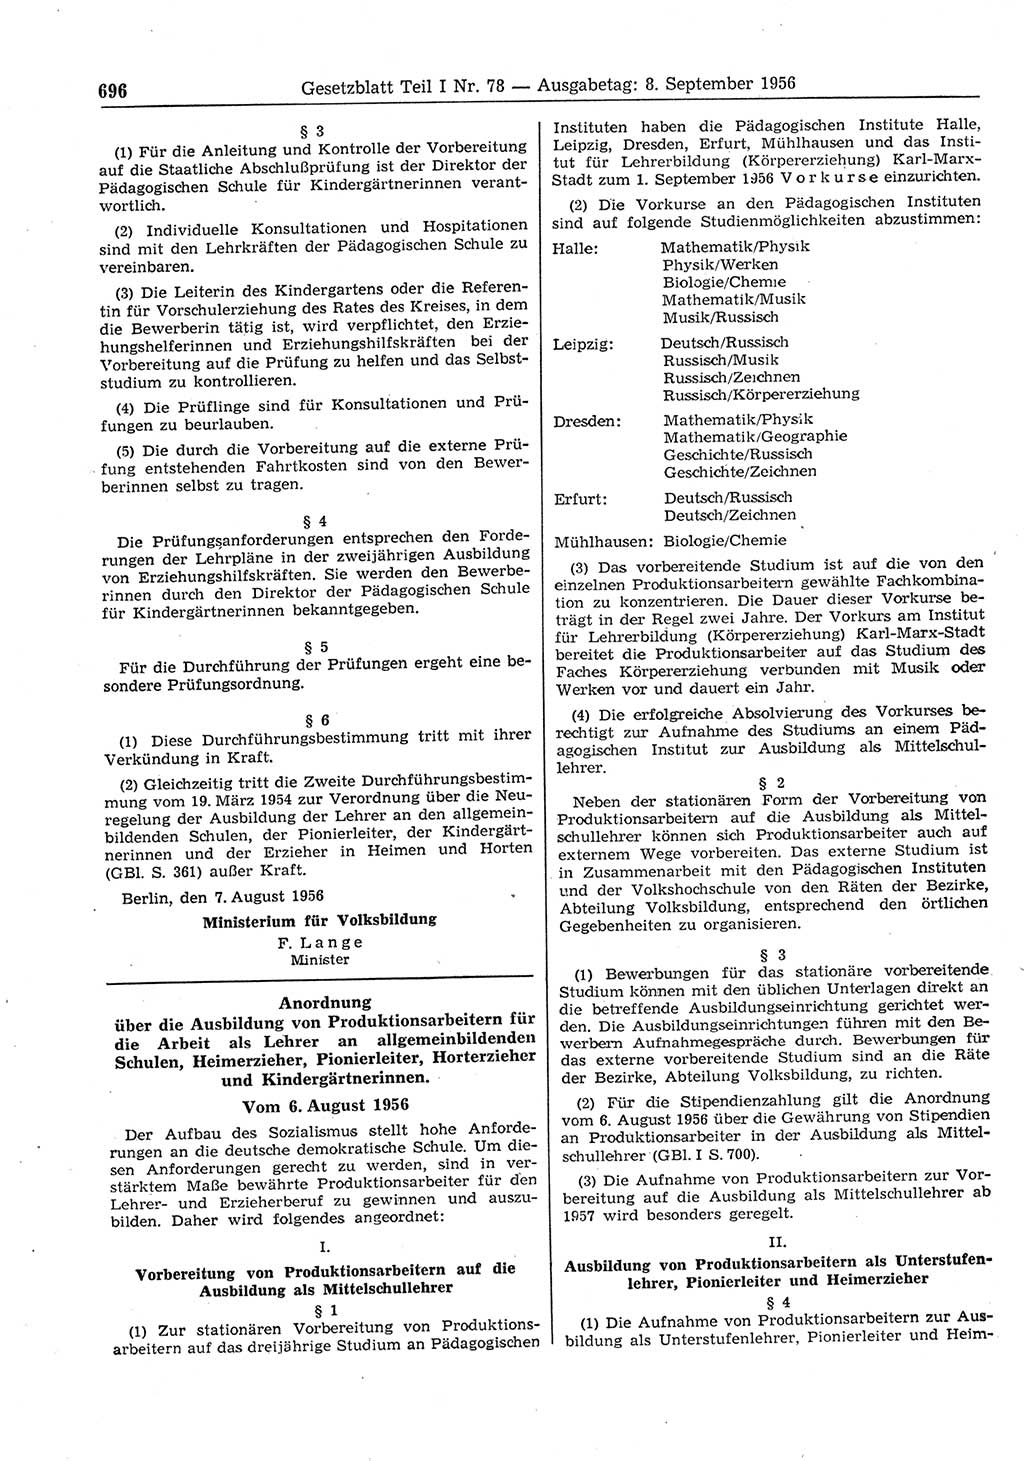 Gesetzblatt (GBl.) der Deutschen Demokratischen Republik (DDR) Teil Ⅰ 1956, Seite 696 (GBl. DDR Ⅰ 1956, S. 696)